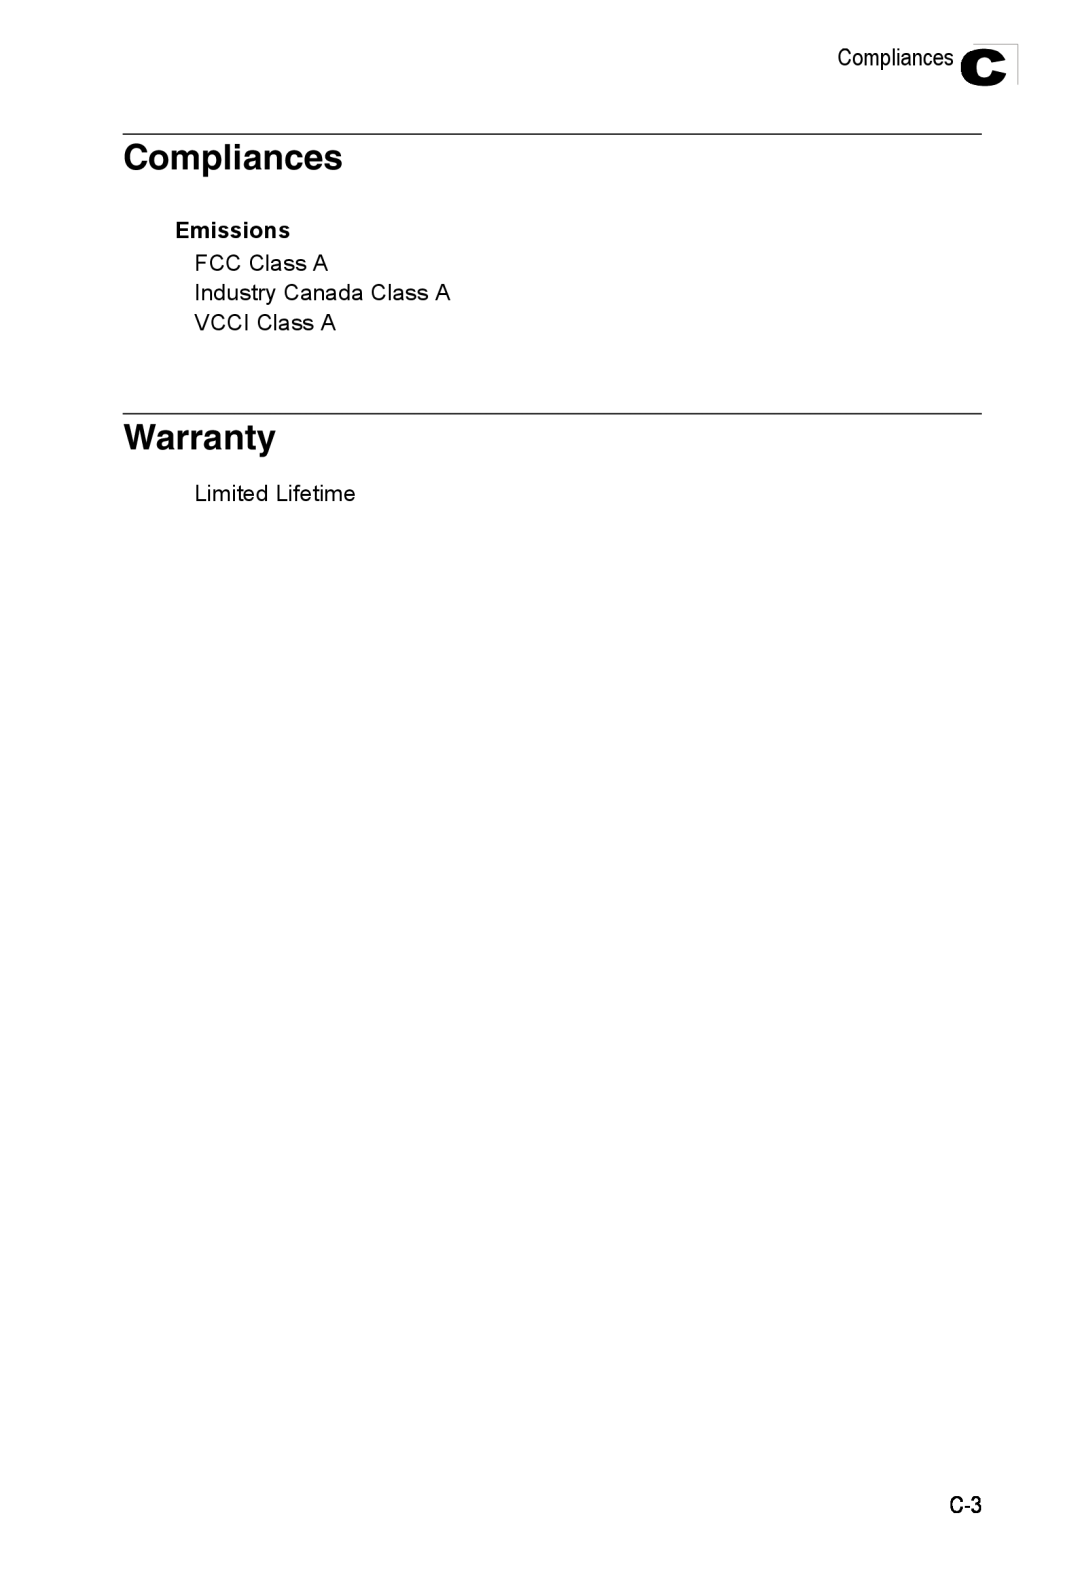 Accton Technology ES4524M-POE manual Compliances, Warranty, Emissions 